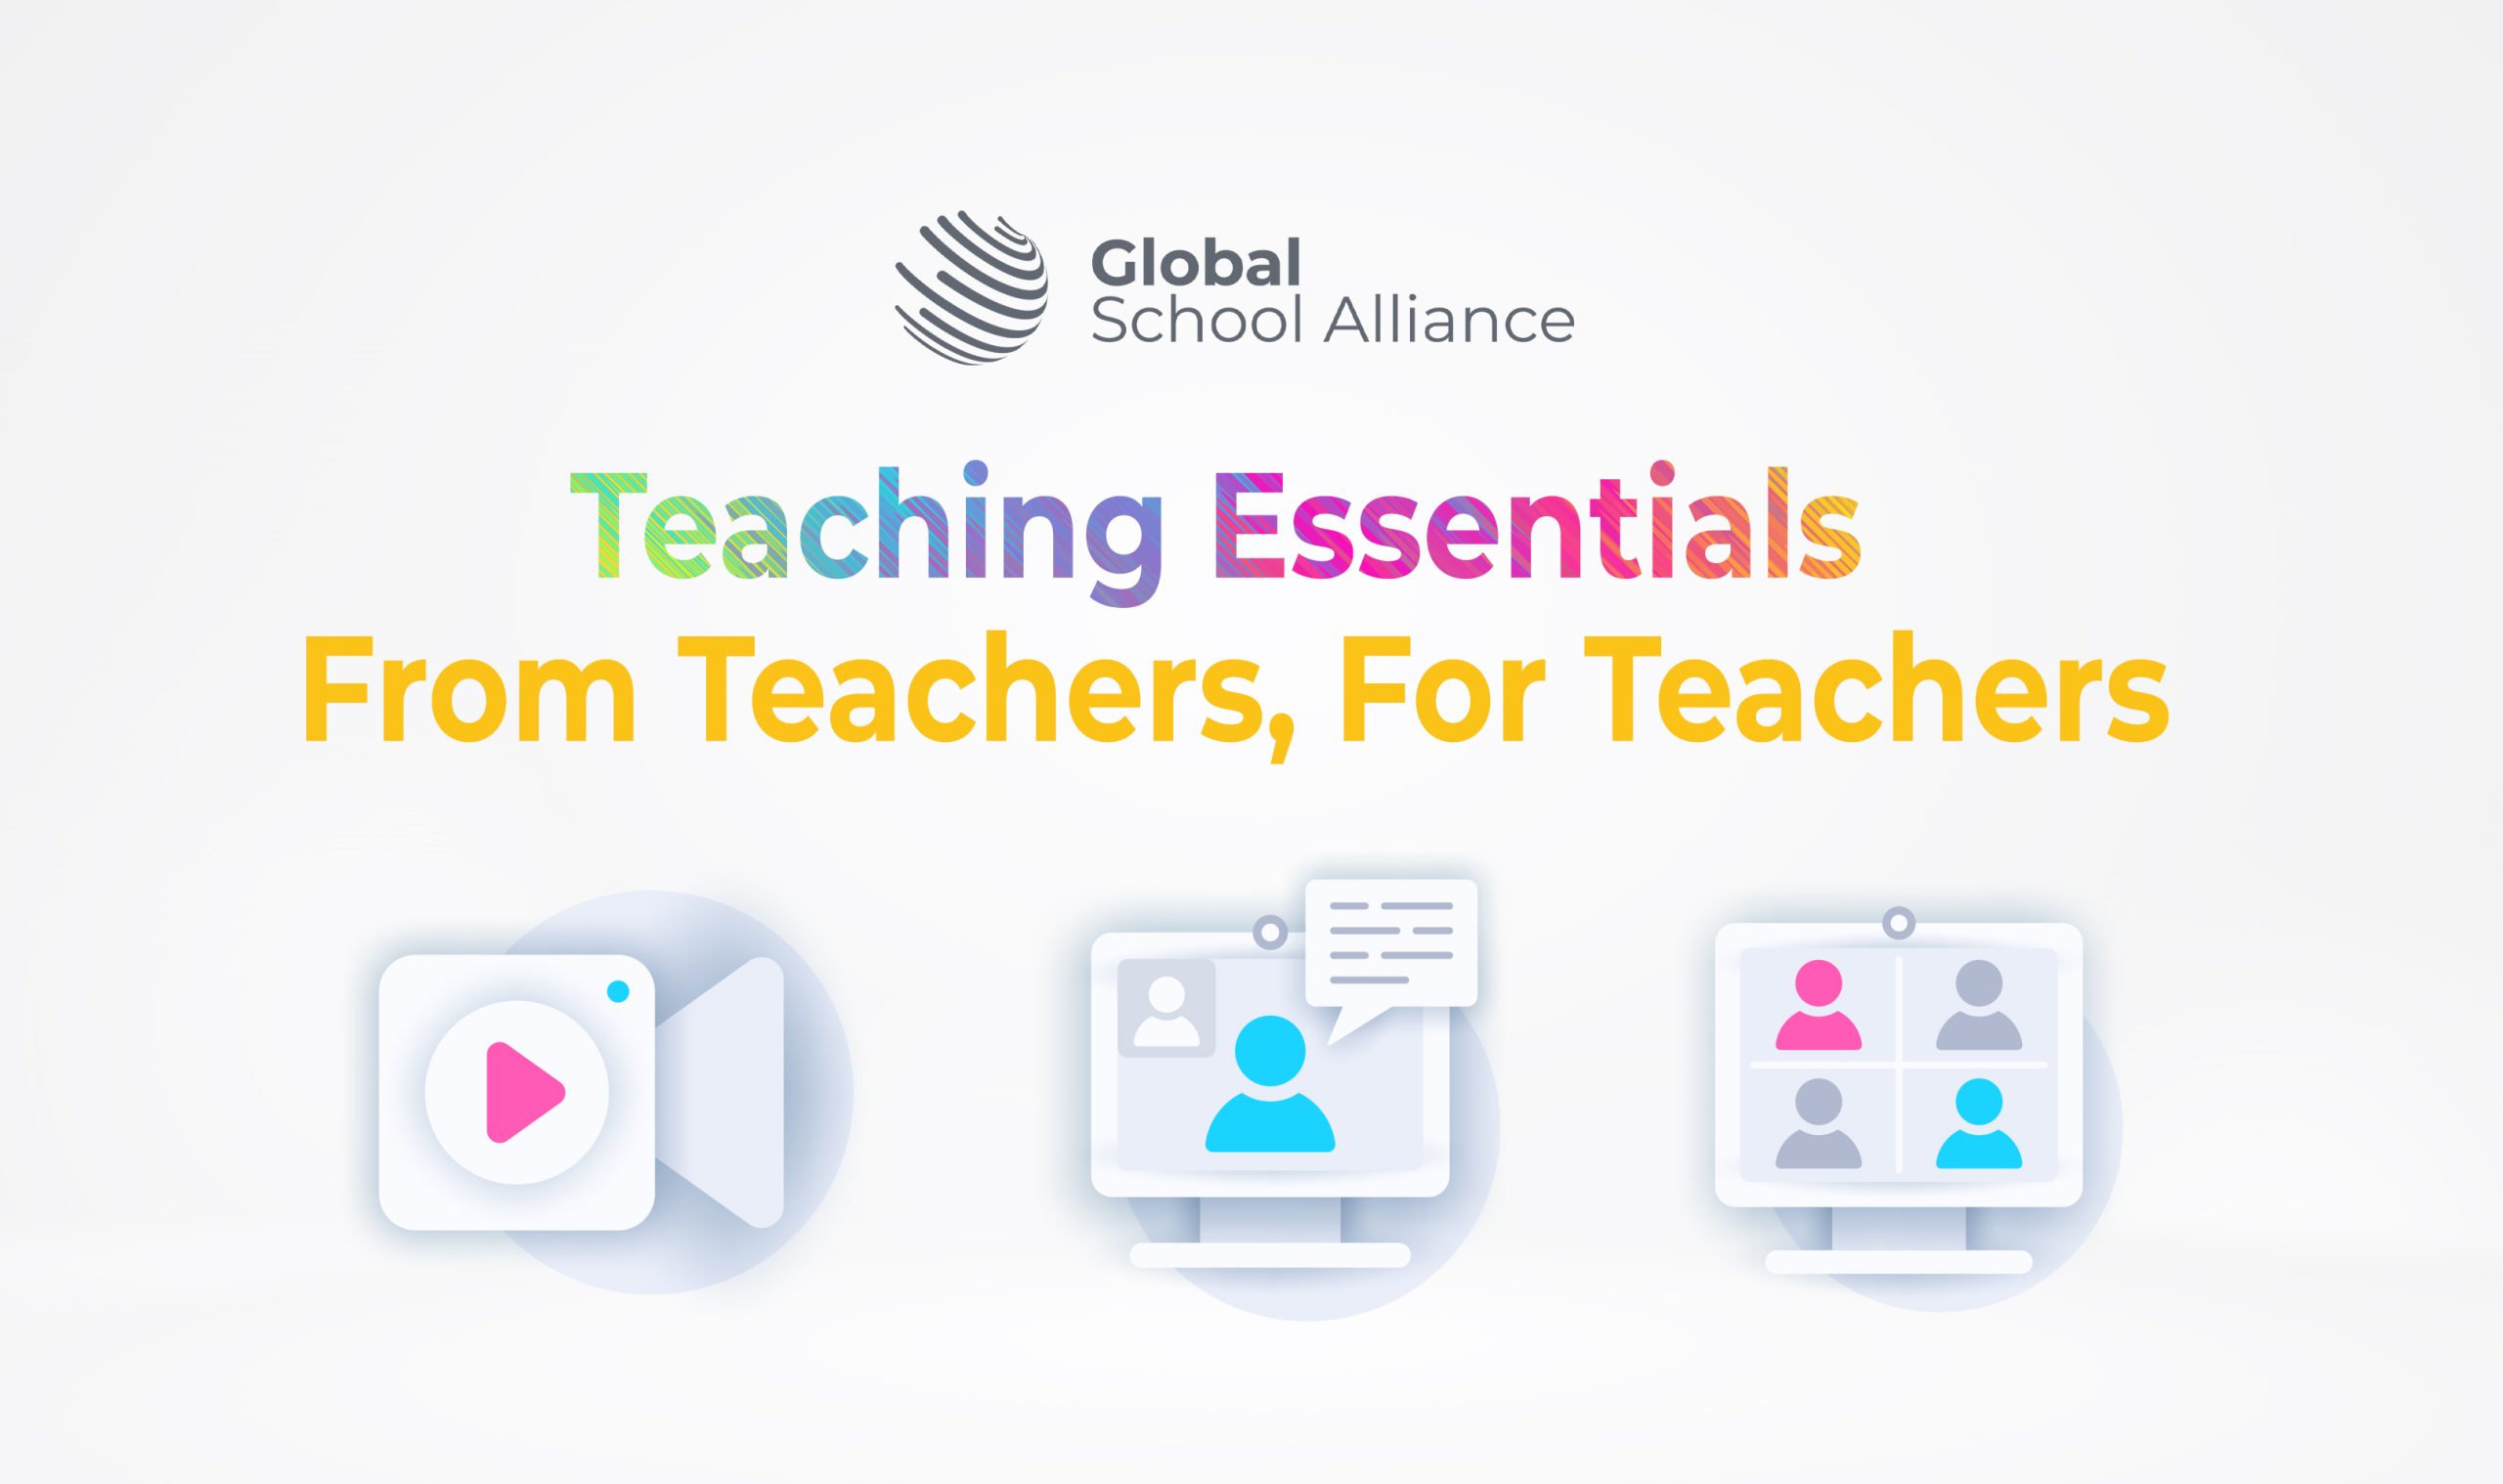 Teaching Essentials: For Teachers From Teachers